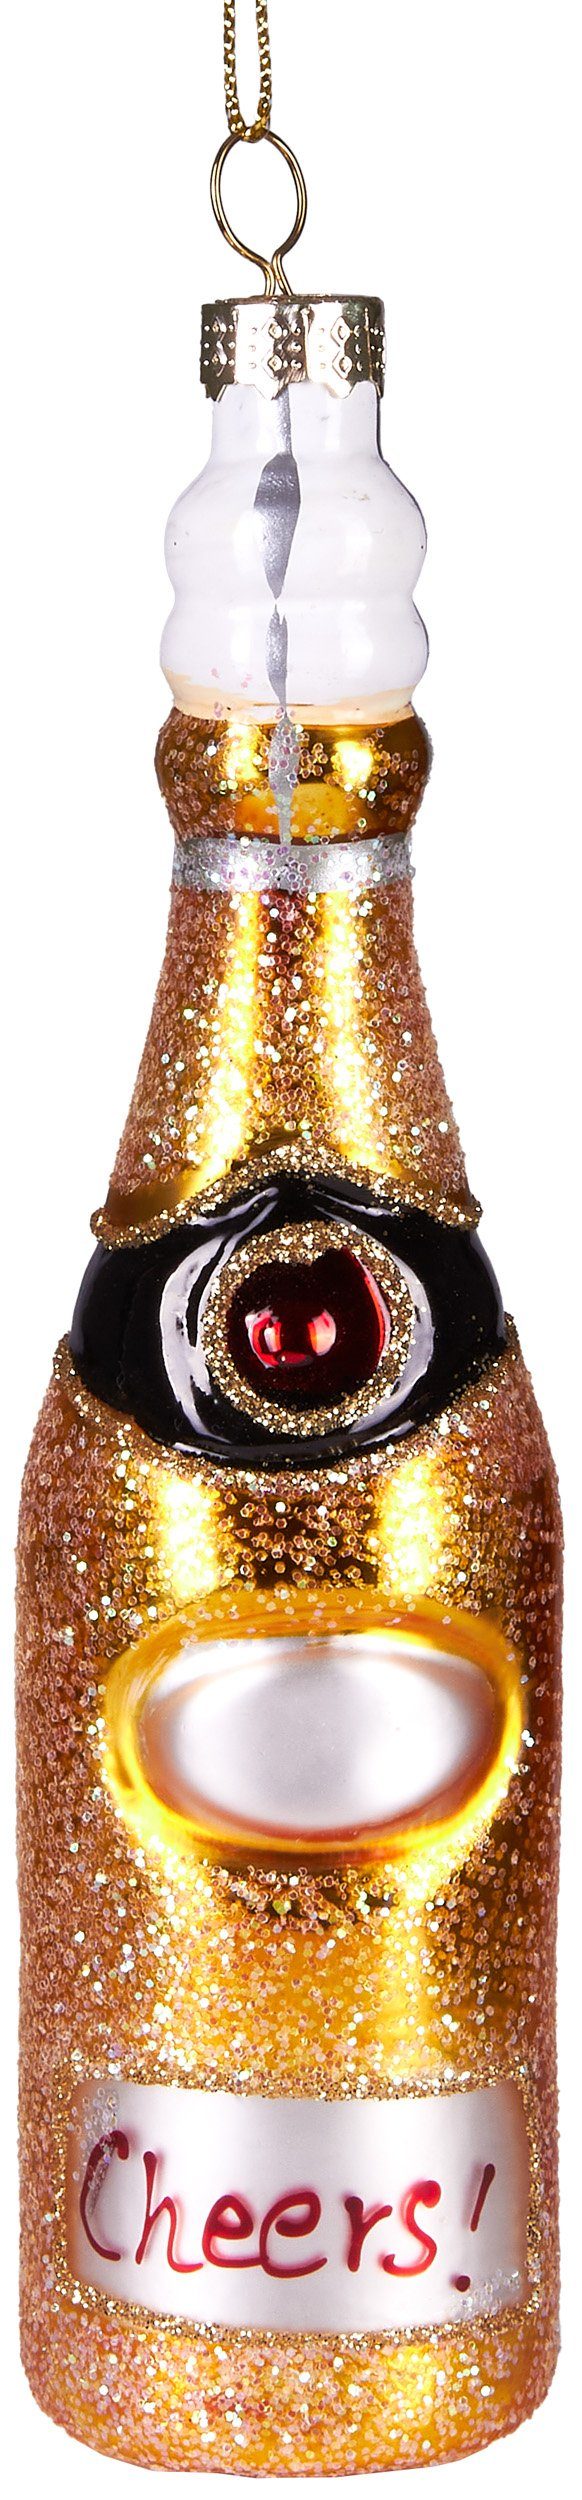 BRUBAKER Christbaumschmuck Handbemalte Weihnachtskugel Champagnerflasche, schöner Weihnachtsanhänger aus Glas, mundgeblasenes Unikat - 15 cm | Dekohänger